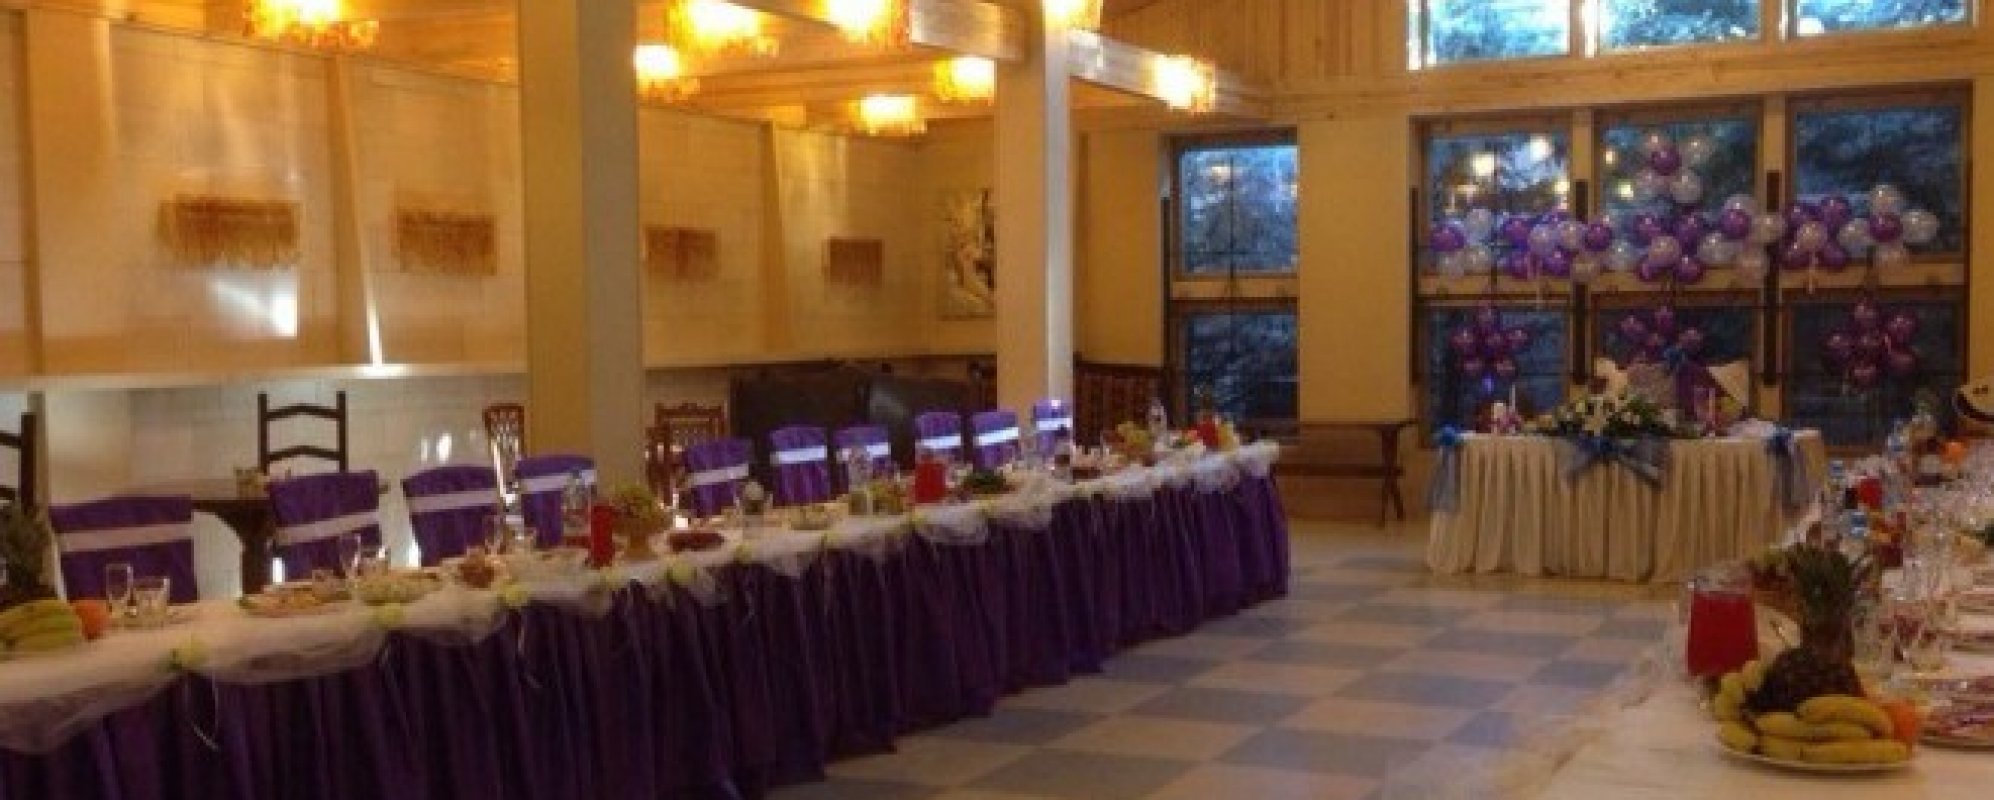 Фотографии банкетного зала Замок Домодедово